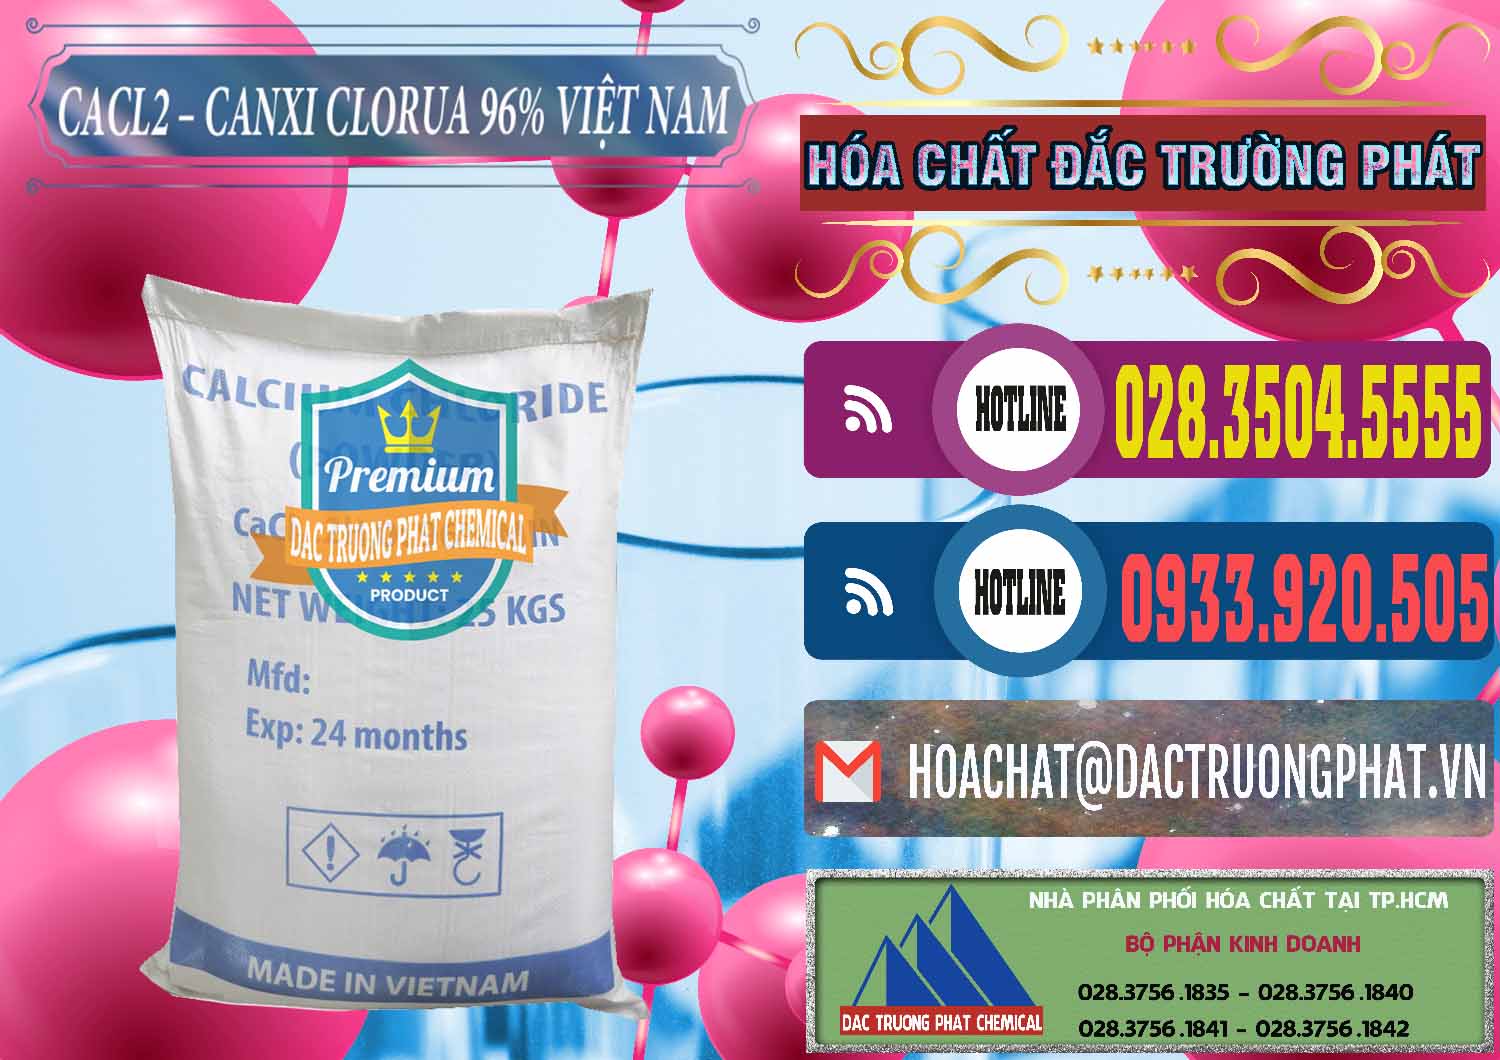 Nơi chuyên bán - cung cấp CaCl2 – Canxi Clorua 96% Việt Nam - 0236 - Đơn vị chuyên kinh doanh ( bán ) hóa chất tại TP.HCM - muabanhoachat.com.vn